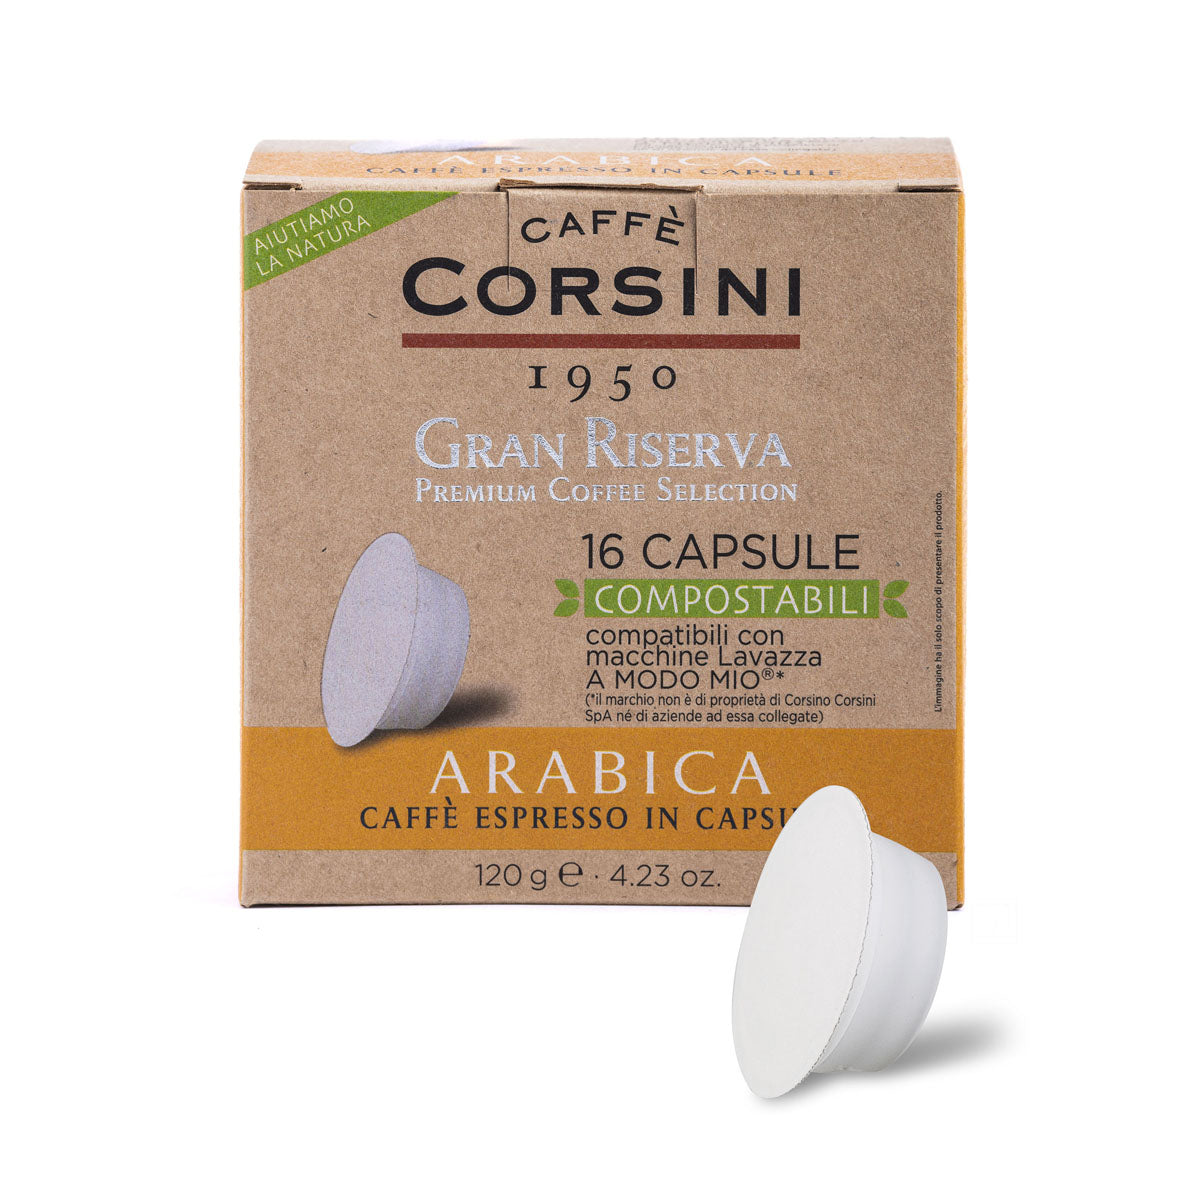 Compostable coffee capsules compatible with Lavazza®* A Modo Mio®* | Gran Riserva Arabica | 16 pieces